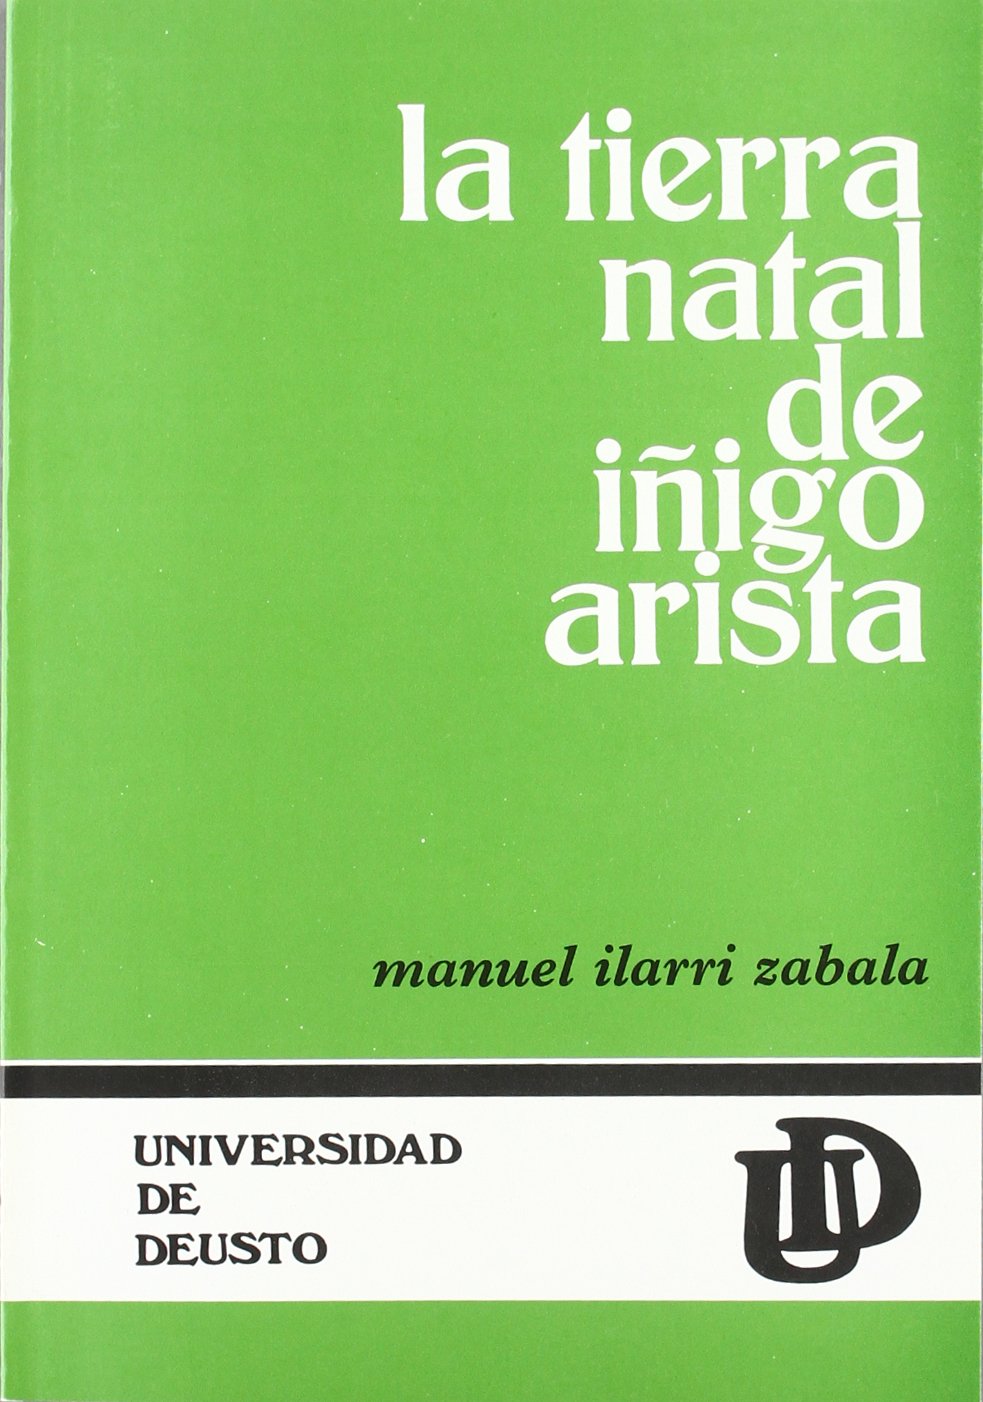 Imagen de portada del libro La tierra natal de Iñigo Arista